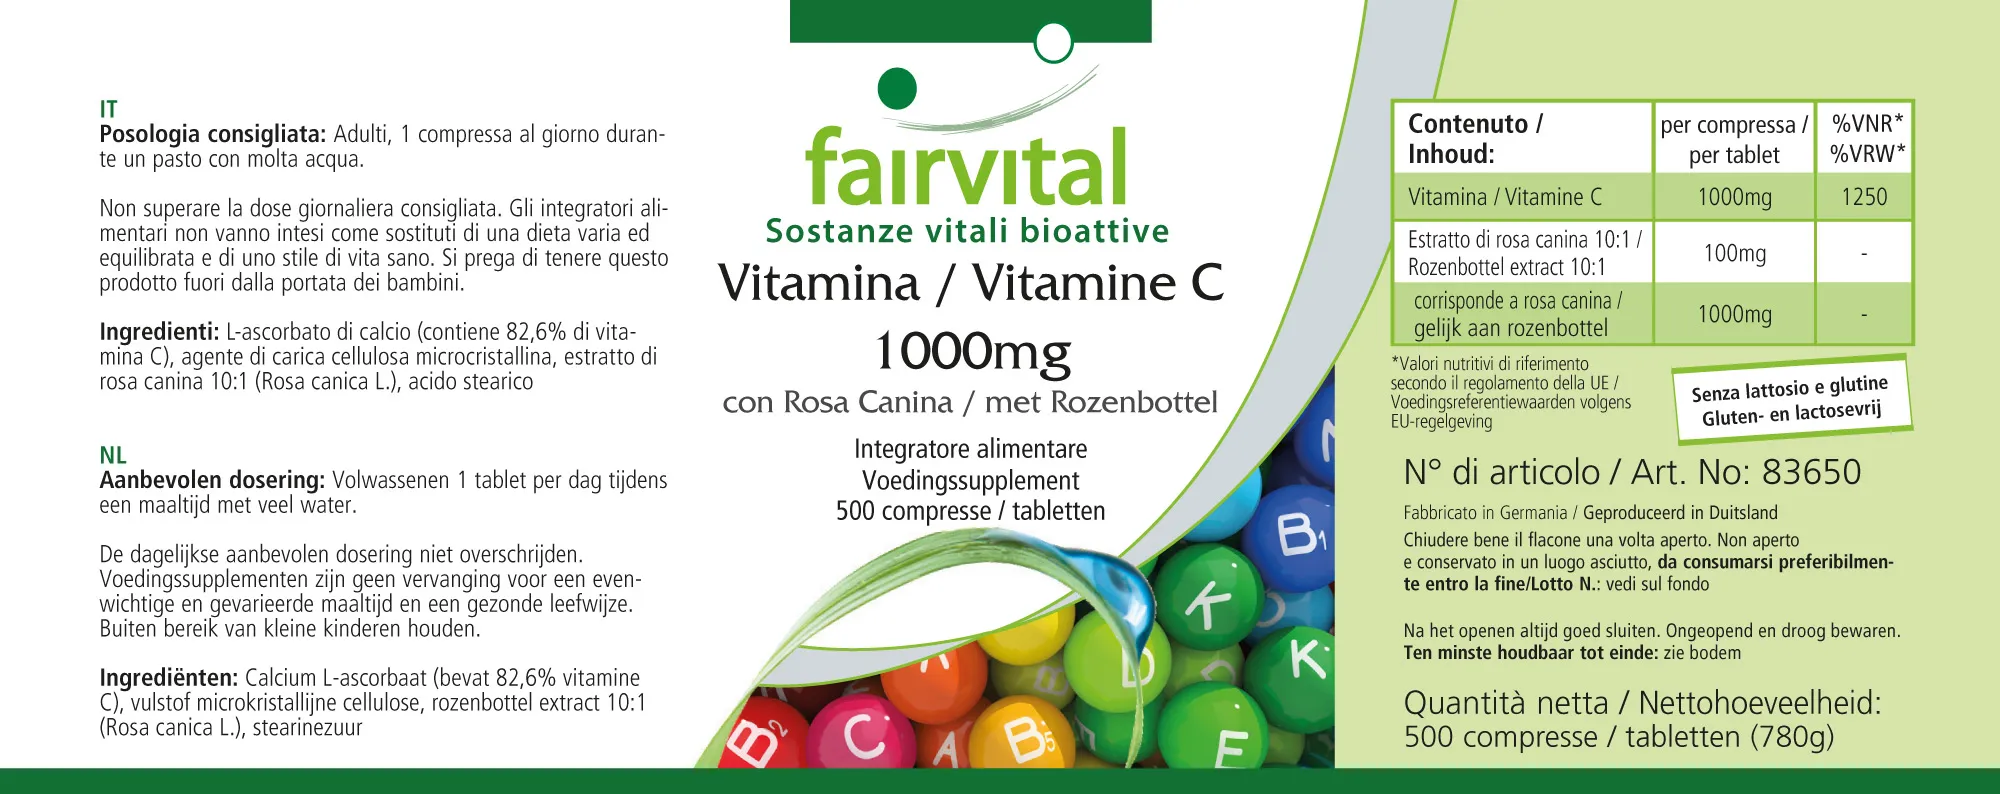 Vitamin C 1000mg mit Hagebutte - 500 Tabletten